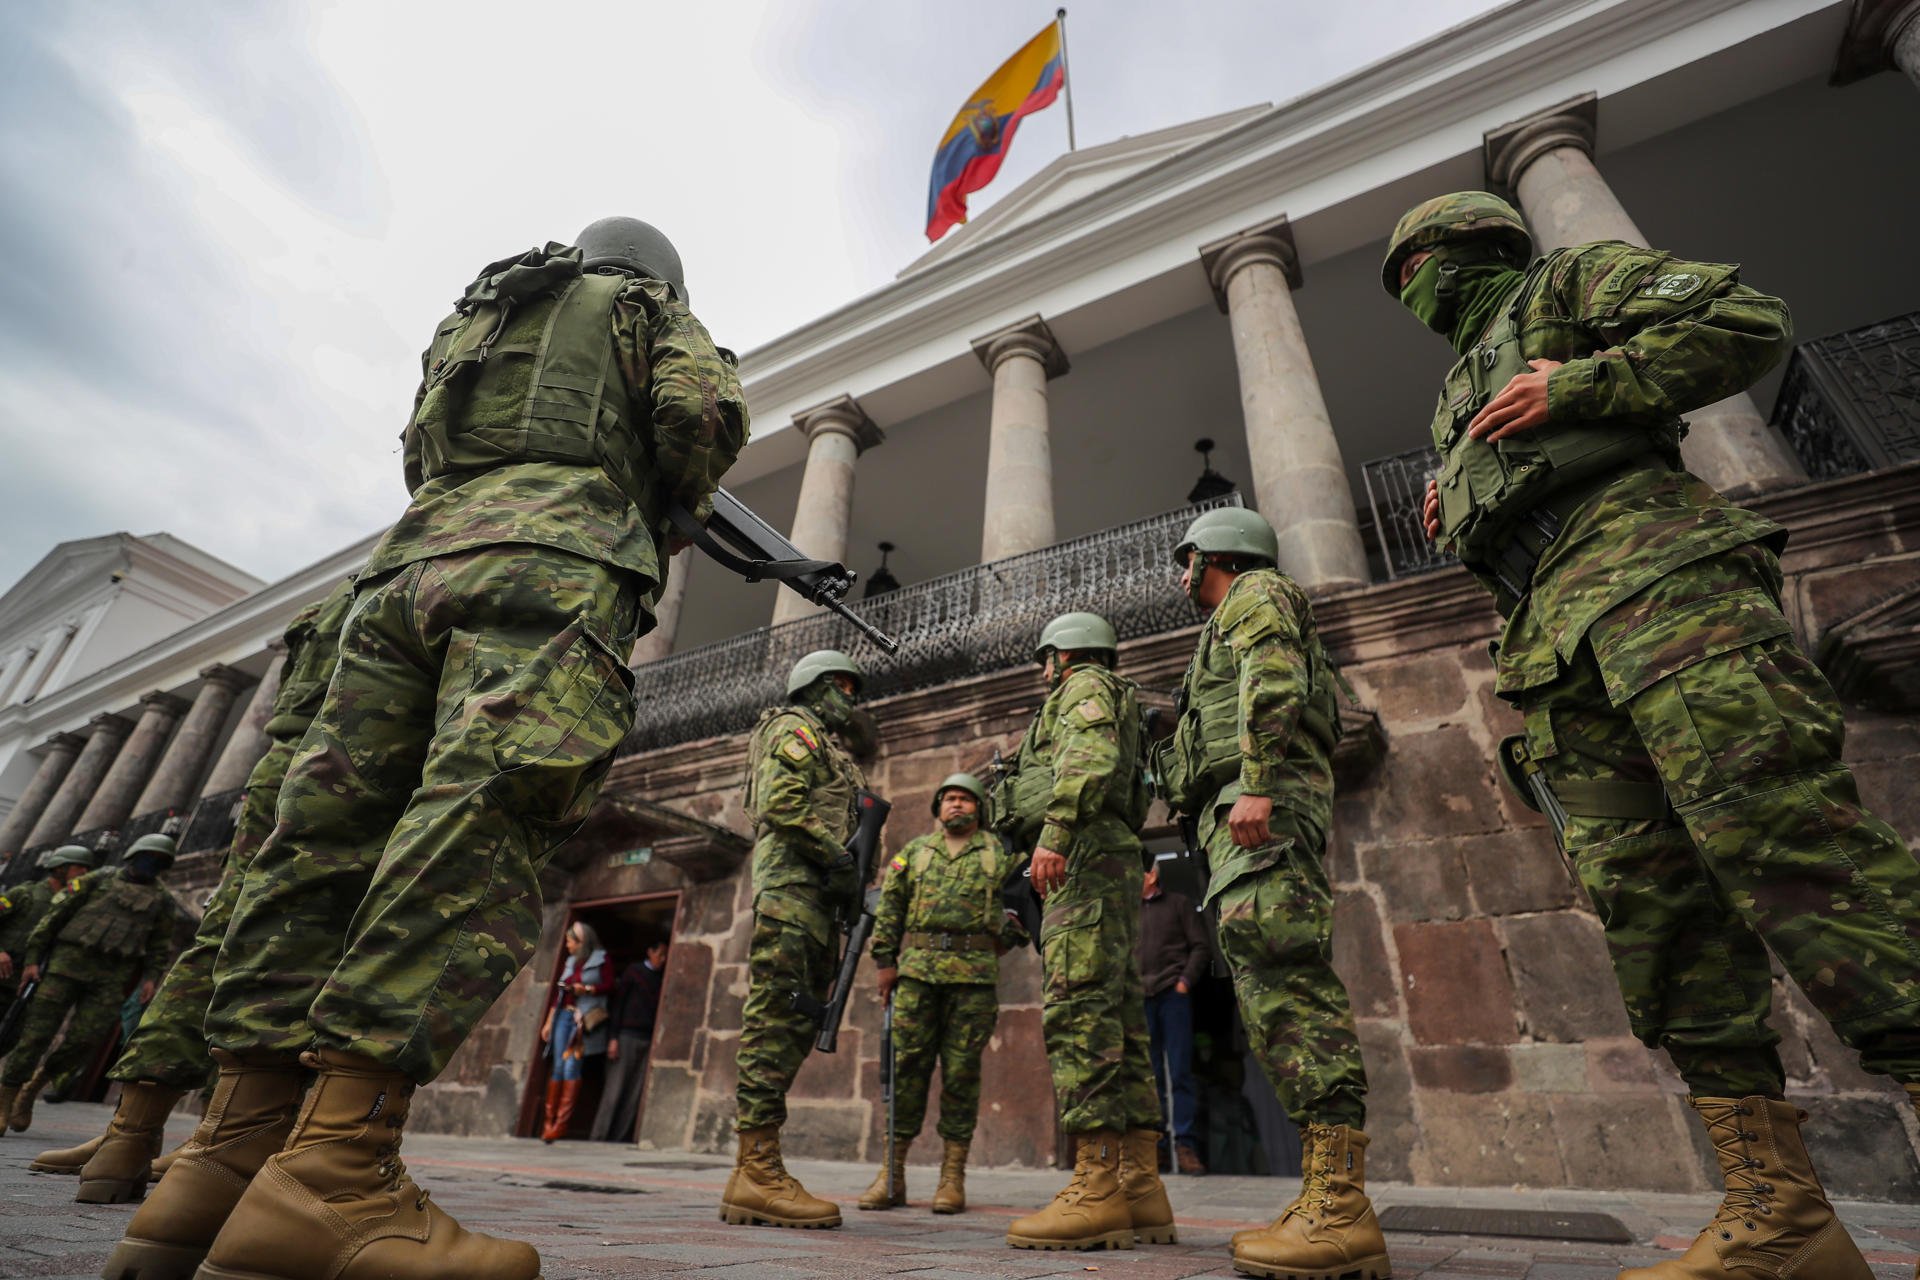 Fuerte resguardo del Palacio de Gobierno simboliza un Ecuador militarizado